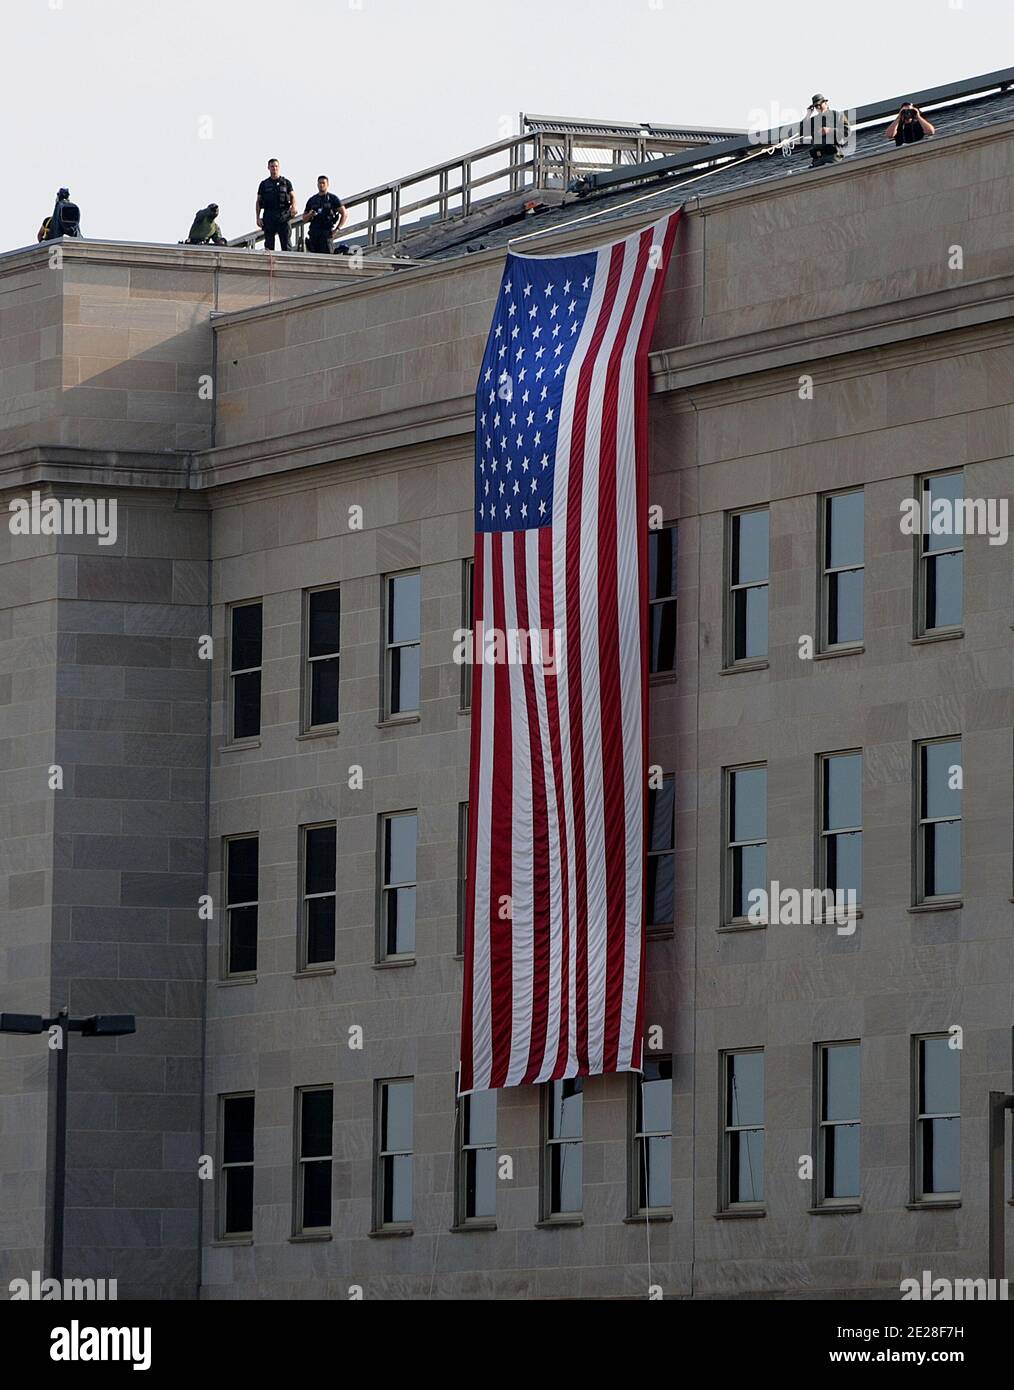 Un'enorme bandiera americana è appesa al punto di impatto al Pentagono, nel decimo anniversario di 9/11 2001 attentati terroristici del 11 settembre 2011 ad Arlington, VA, USA. Foto di Olivier Douliery/ABACAPRESS.COM Foto Stock